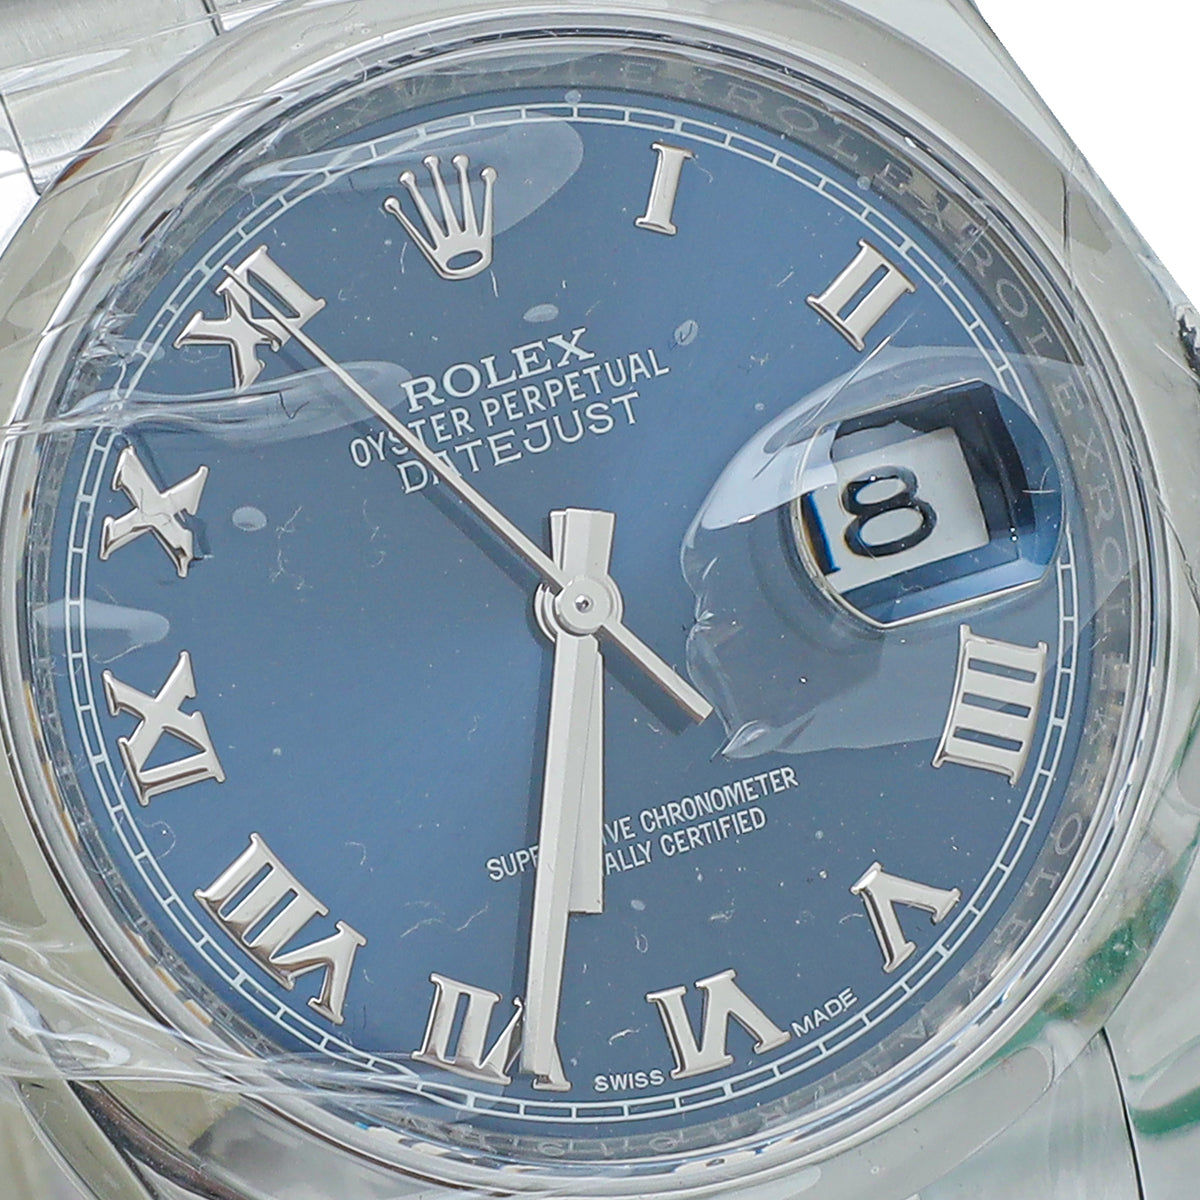 Rolex Stainless Steel Datejust 36mm Watch